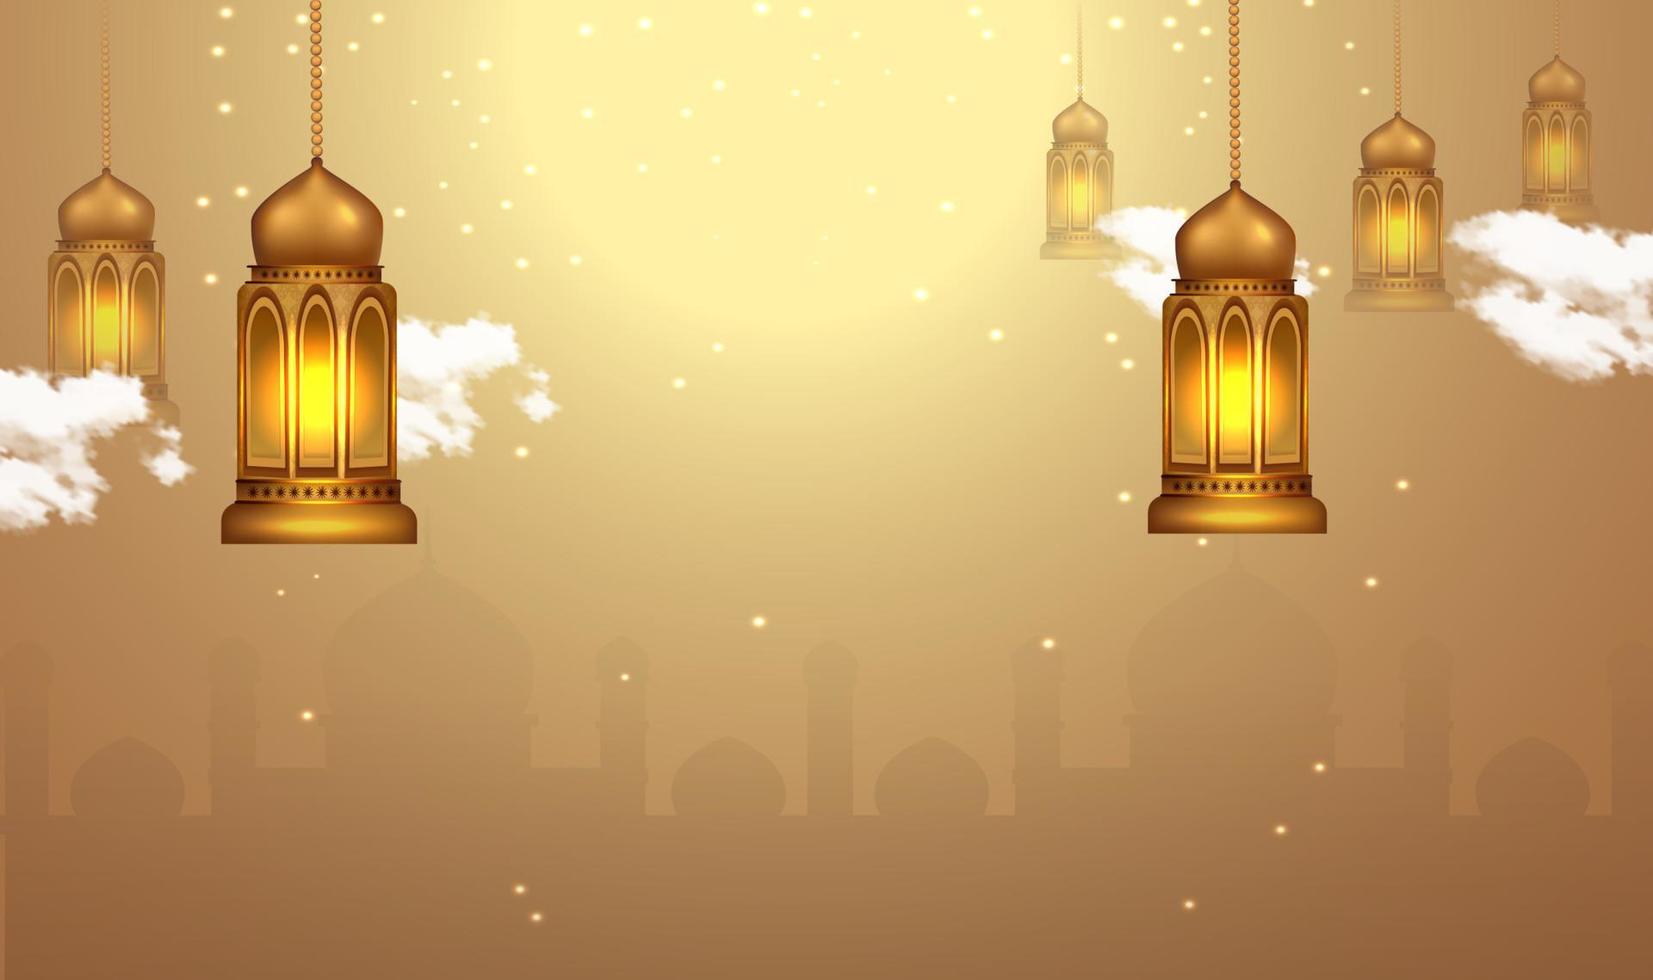 Ramadan Kareem Hintergrund mit Laternenlichtern vektor